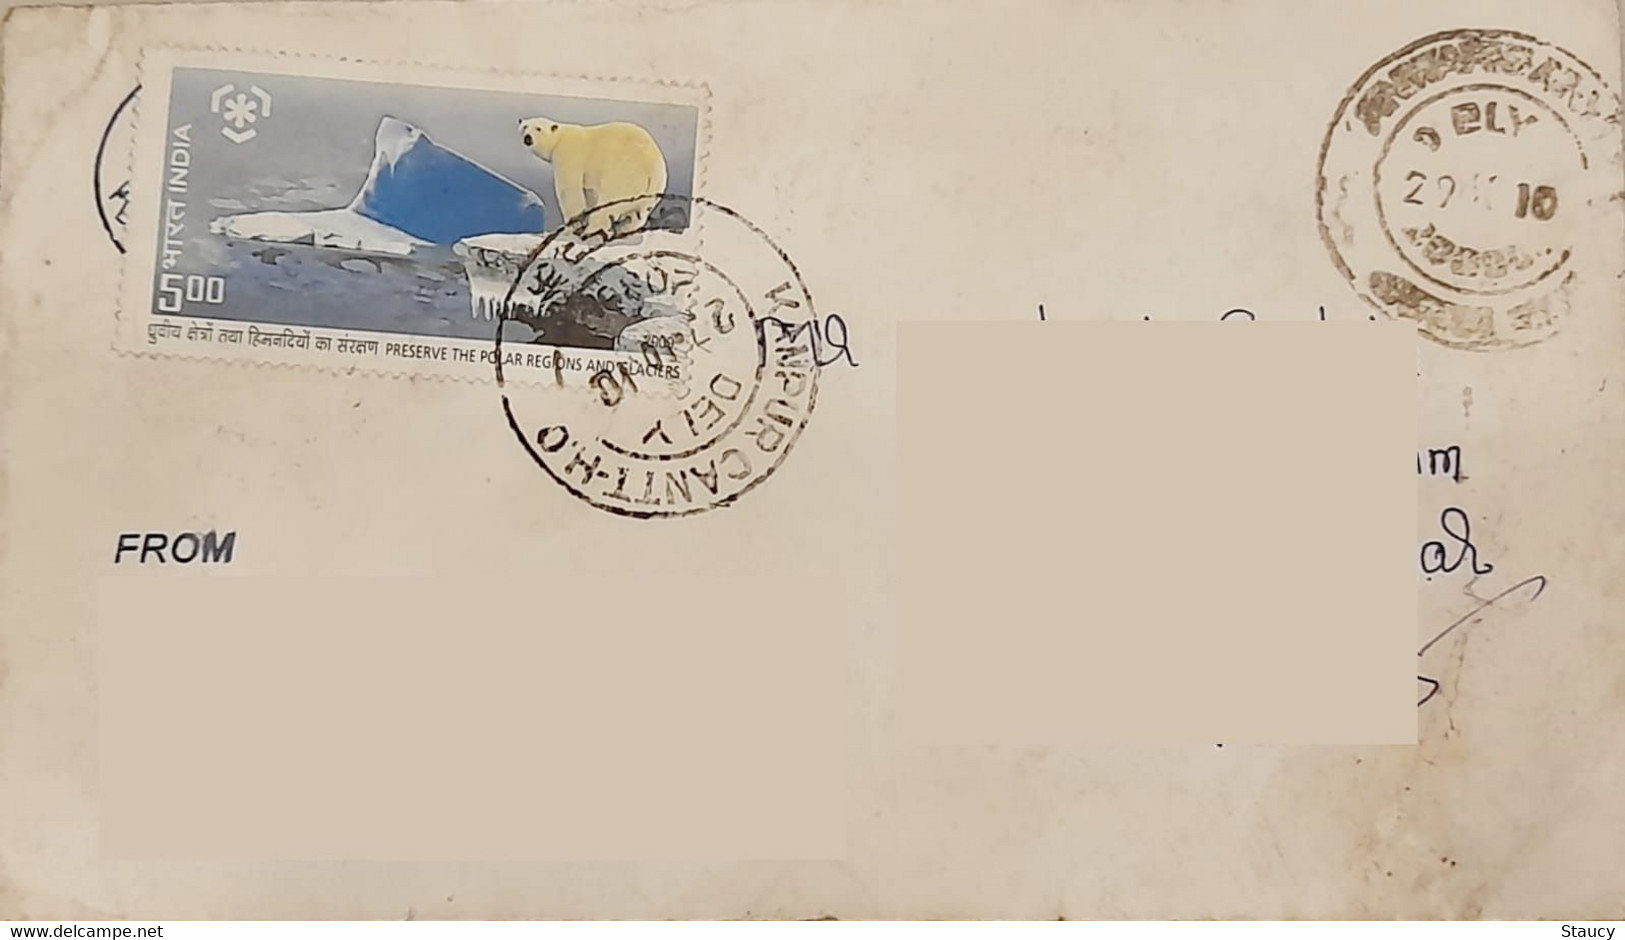 INDIA 2010 Preserve Polar Region & Glaciers Stamps Franked On Postal Cover As Per Scan - Preservare Le Regioni Polari E Ghiacciai